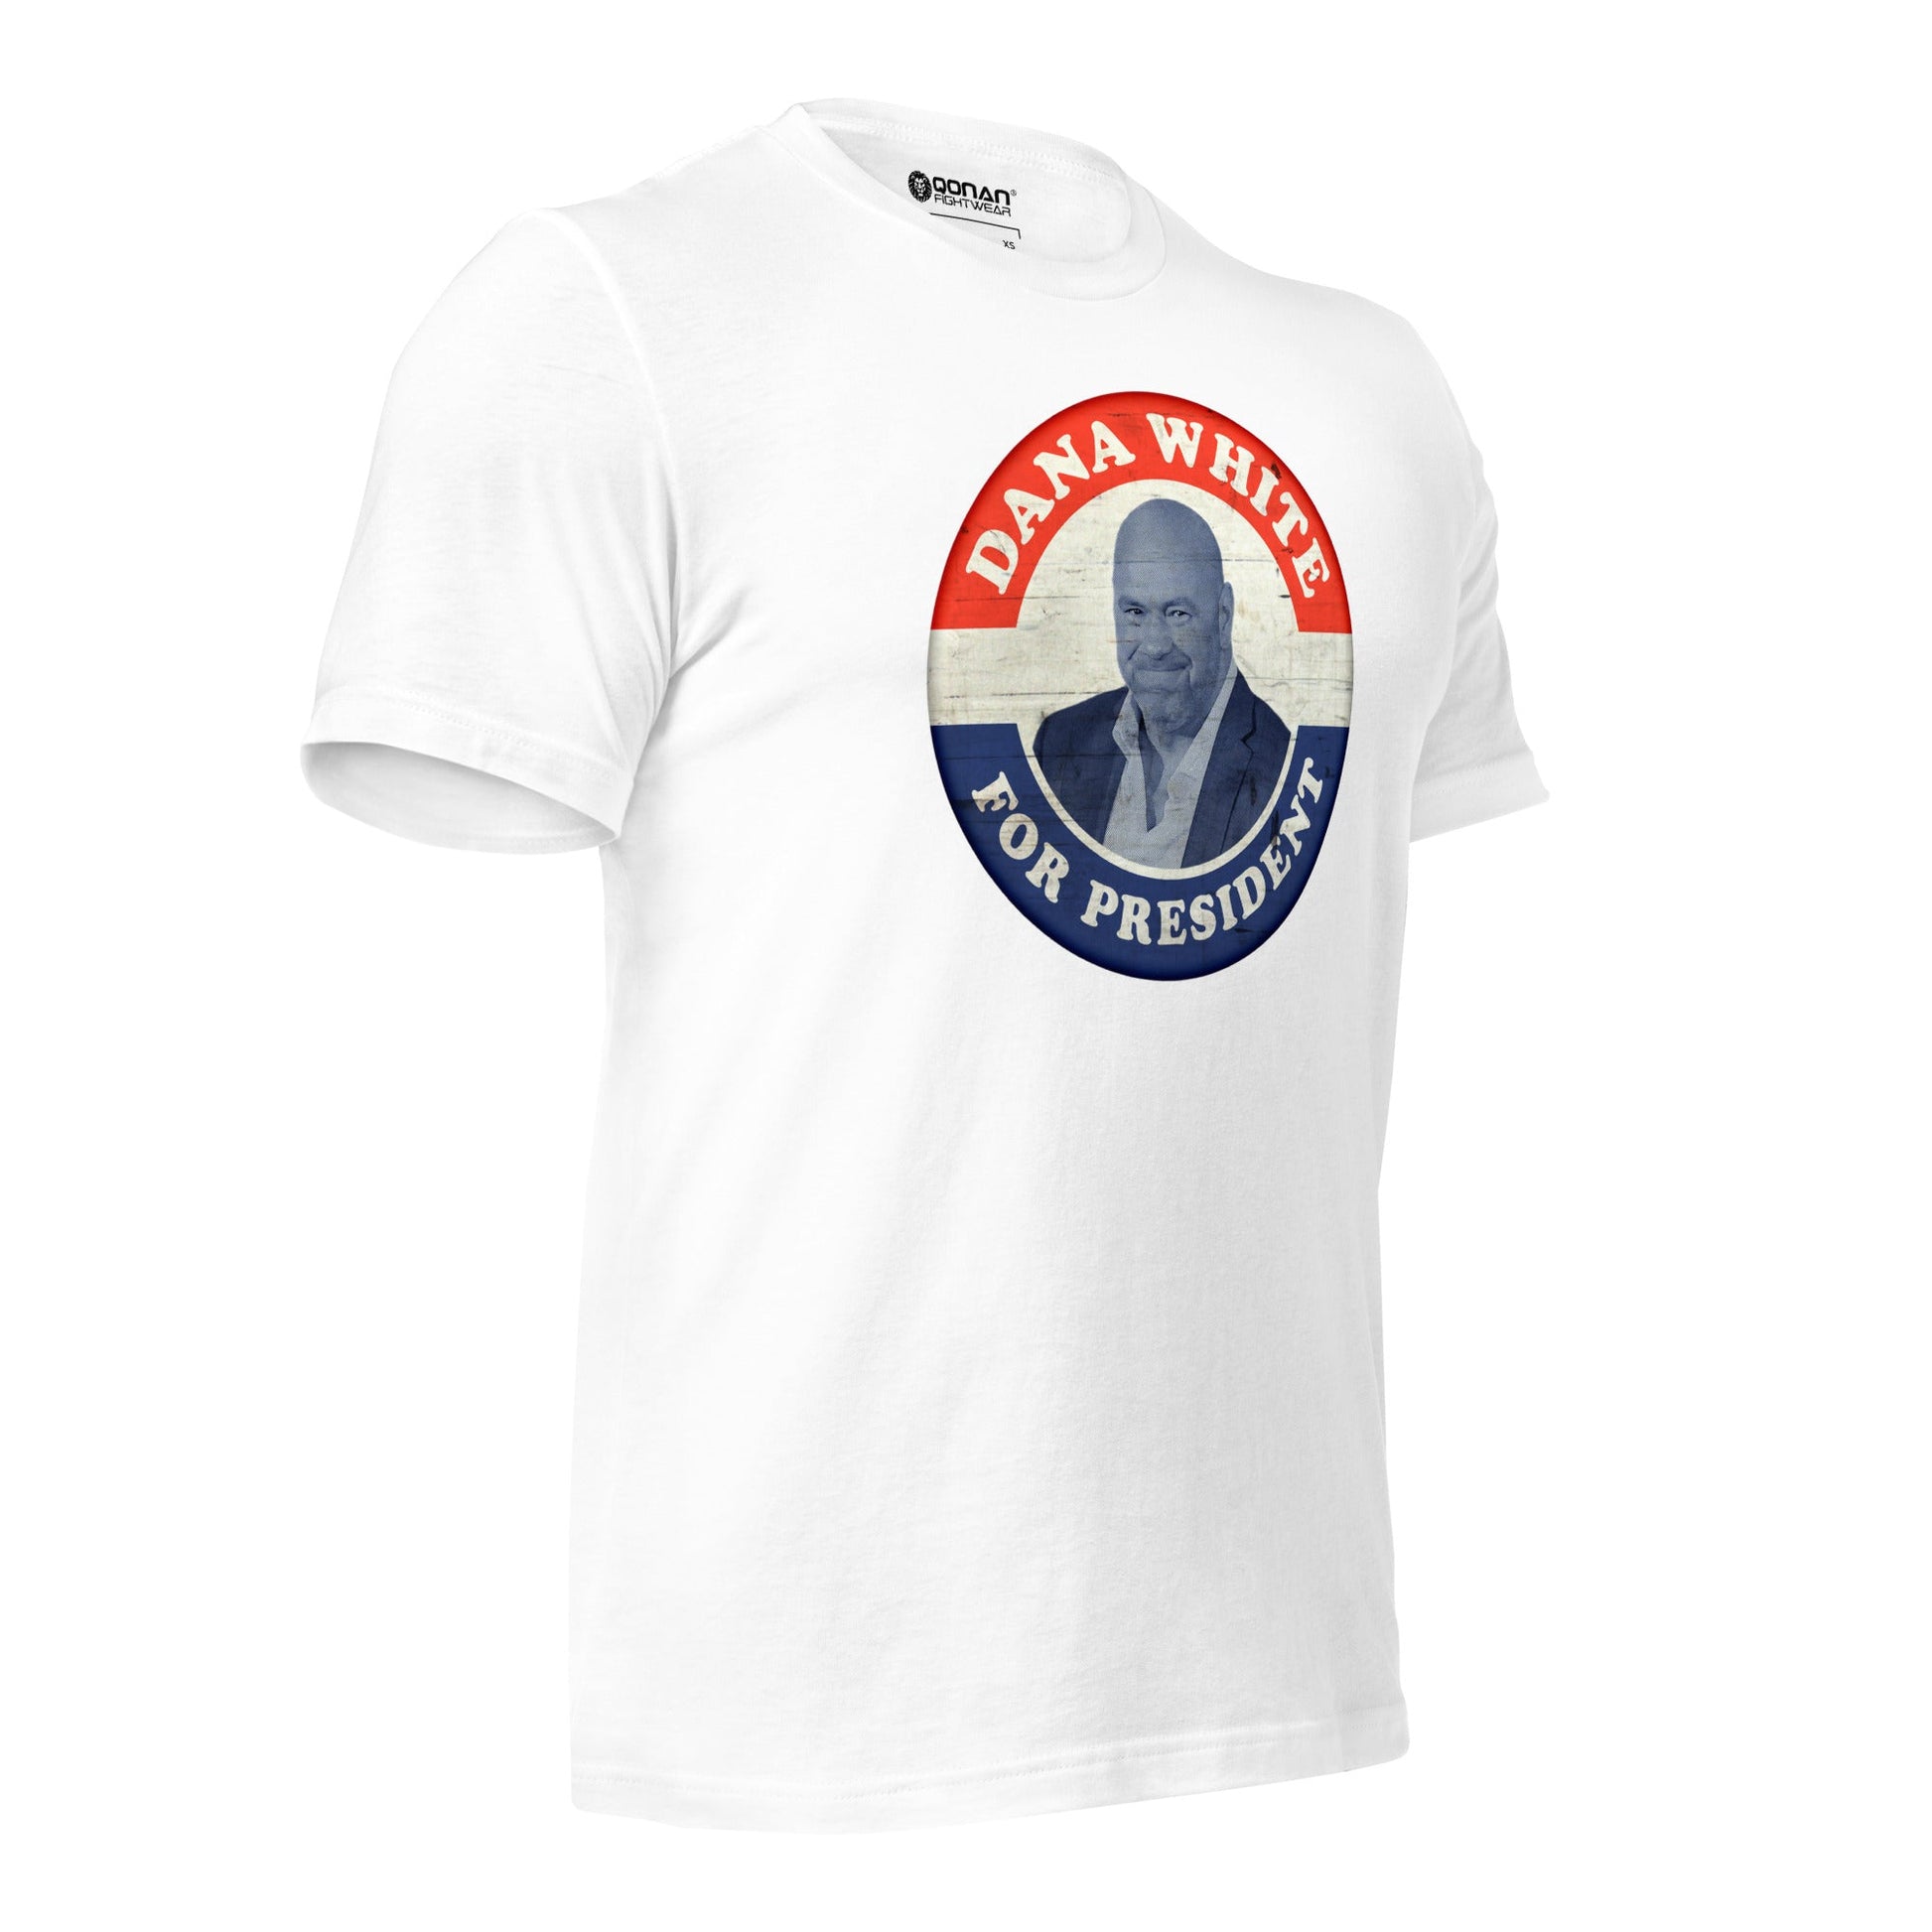 Dana White For President Unisex t-shirt – Qonan Fightwear